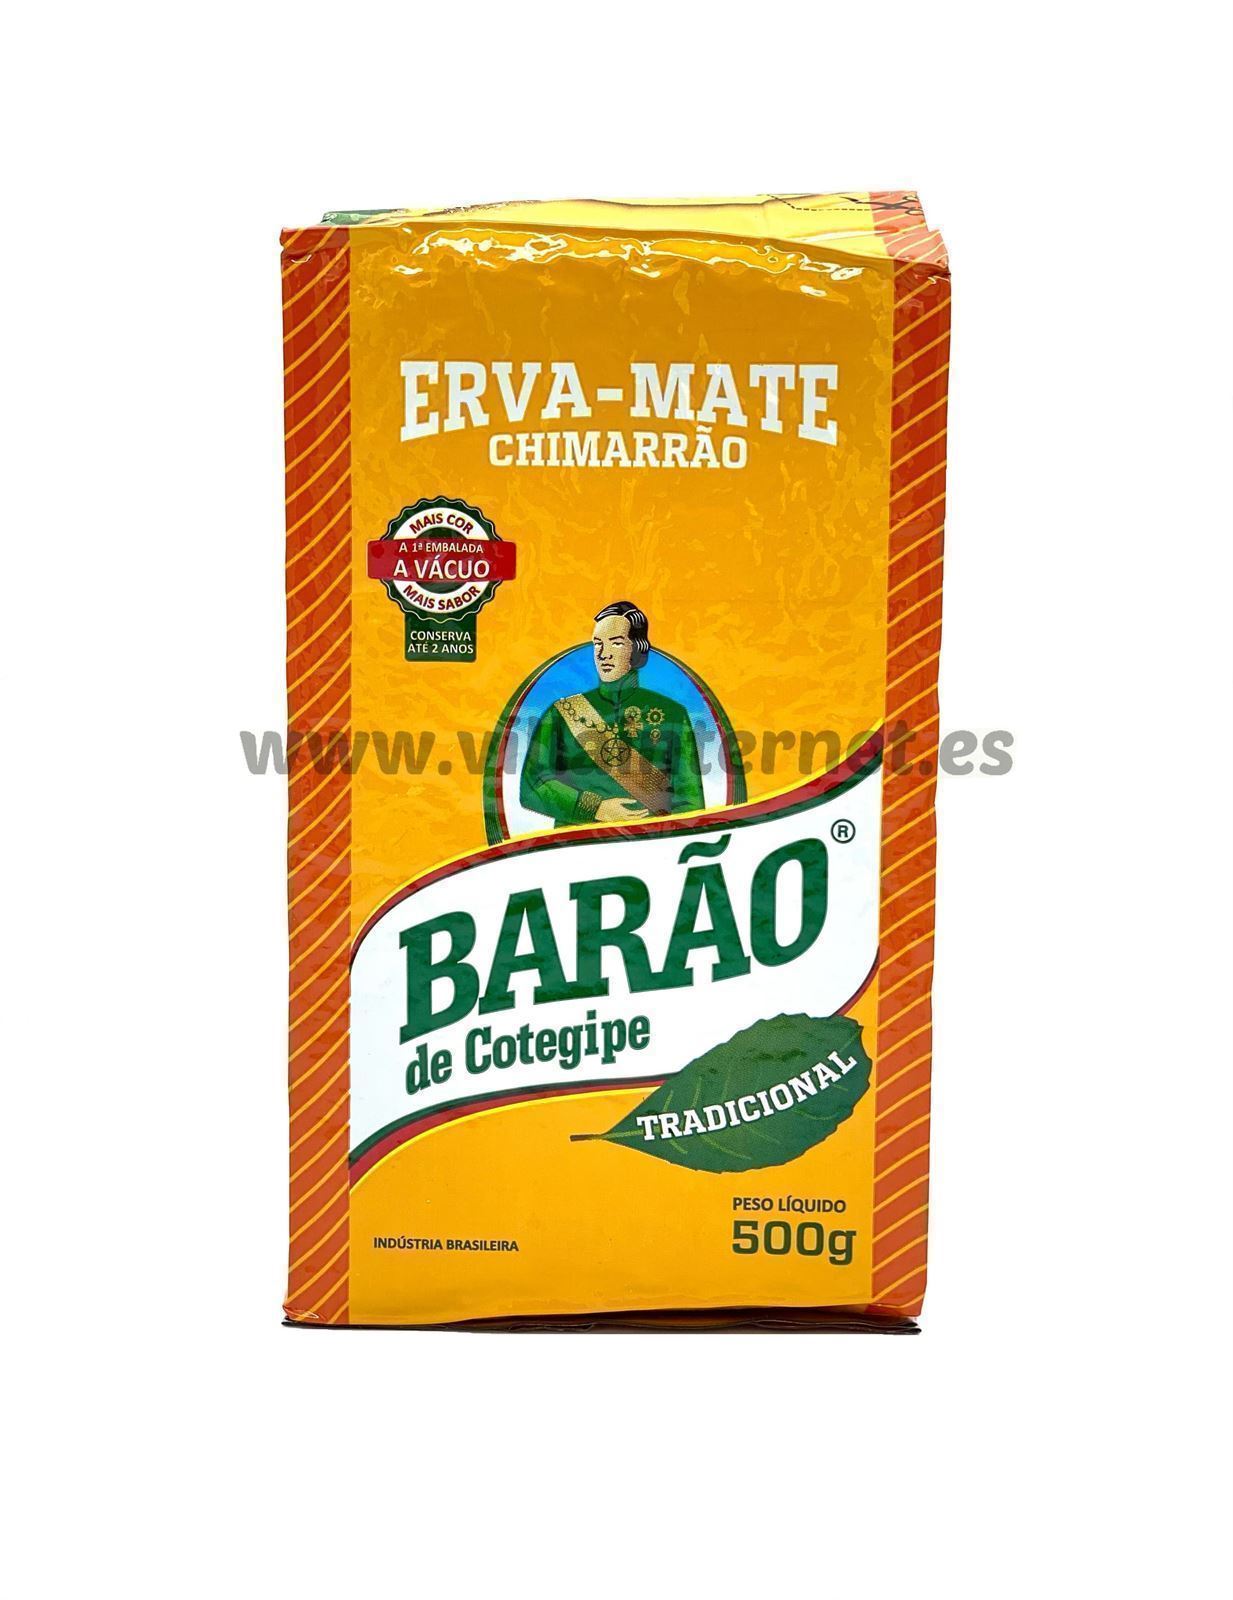 Erva-mate Chimarrão tradicional 500g - Imagen 1